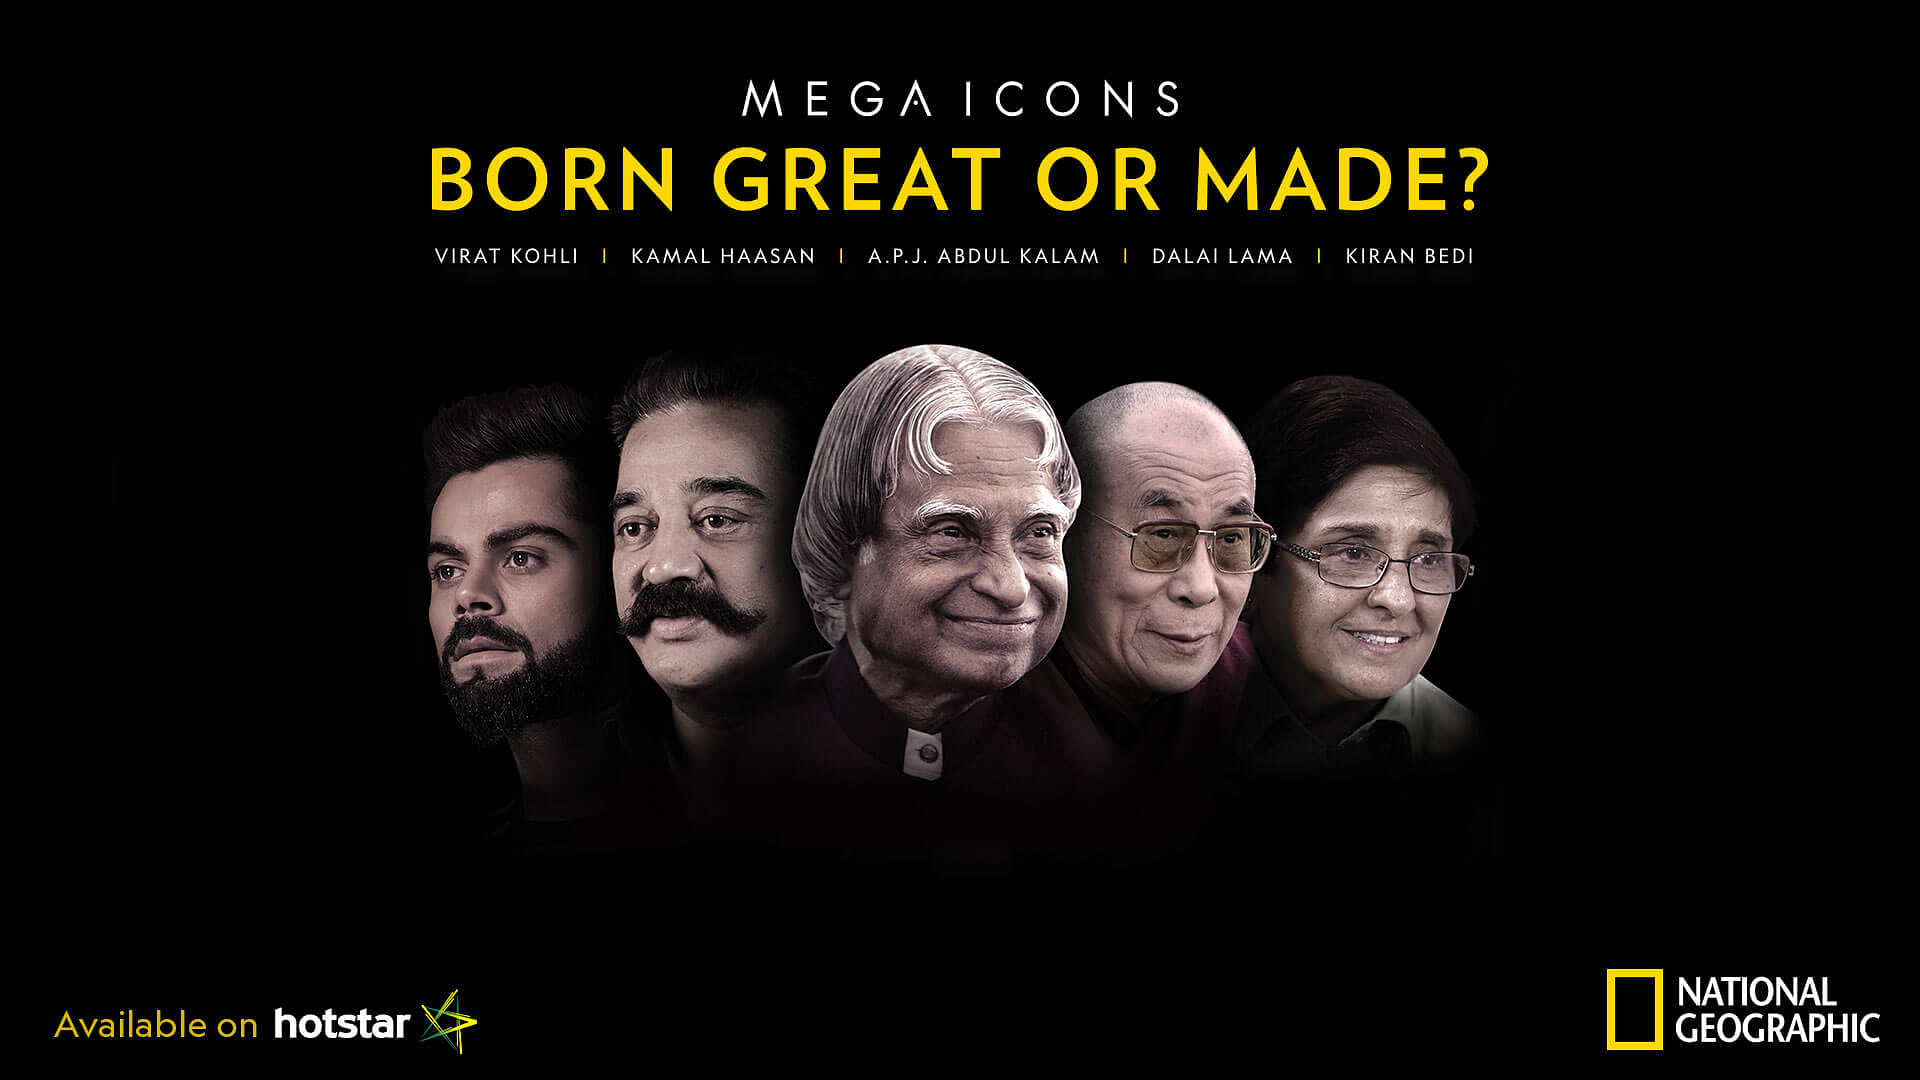 Are geniuses #BornGreatOrMade?